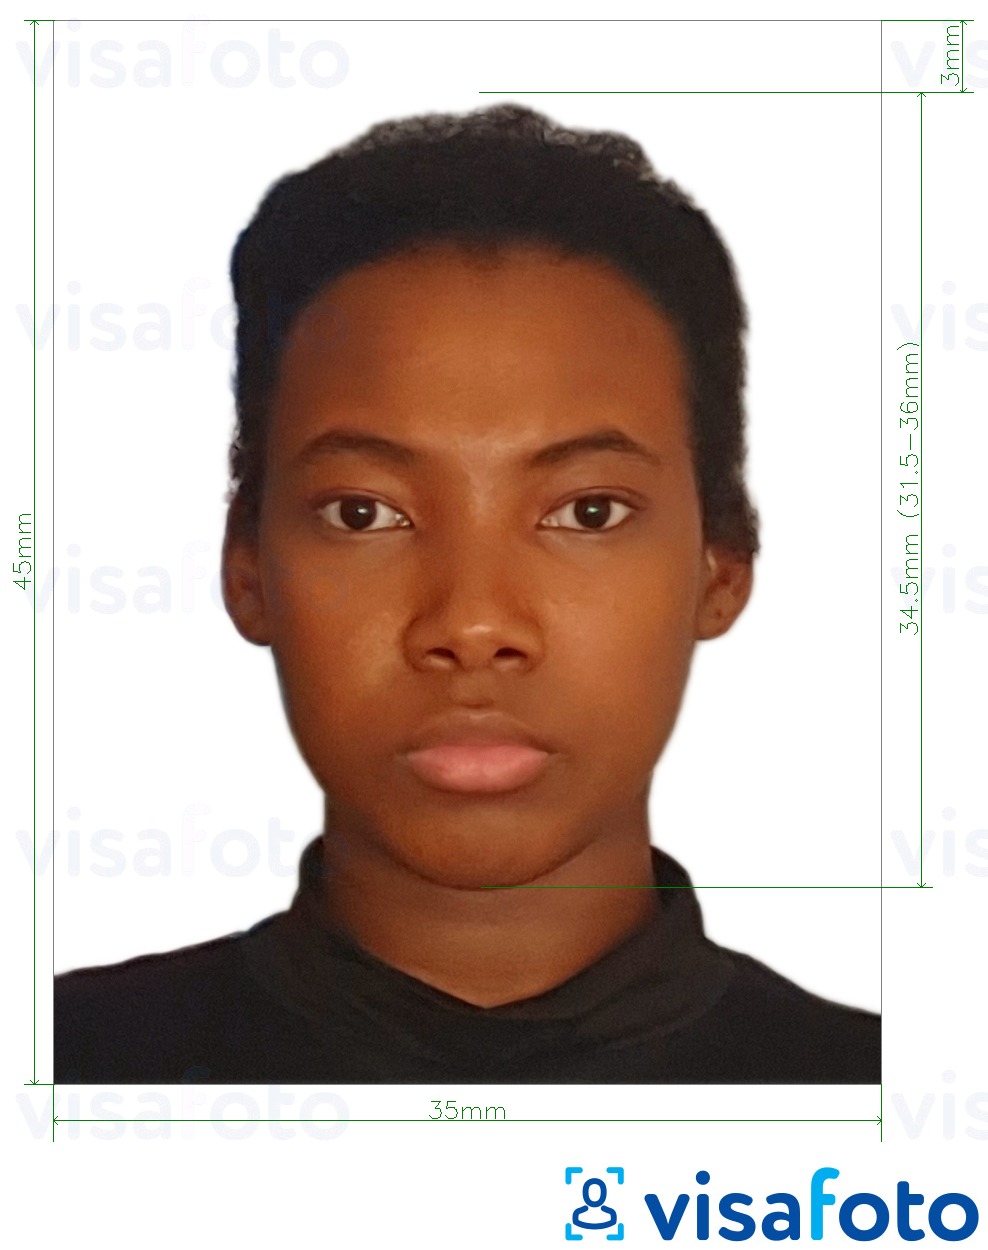 Exemplo de foto para Visto de Moçambique 35x45 mm (3.5x4.5 cm) com especificação exata de dimensão